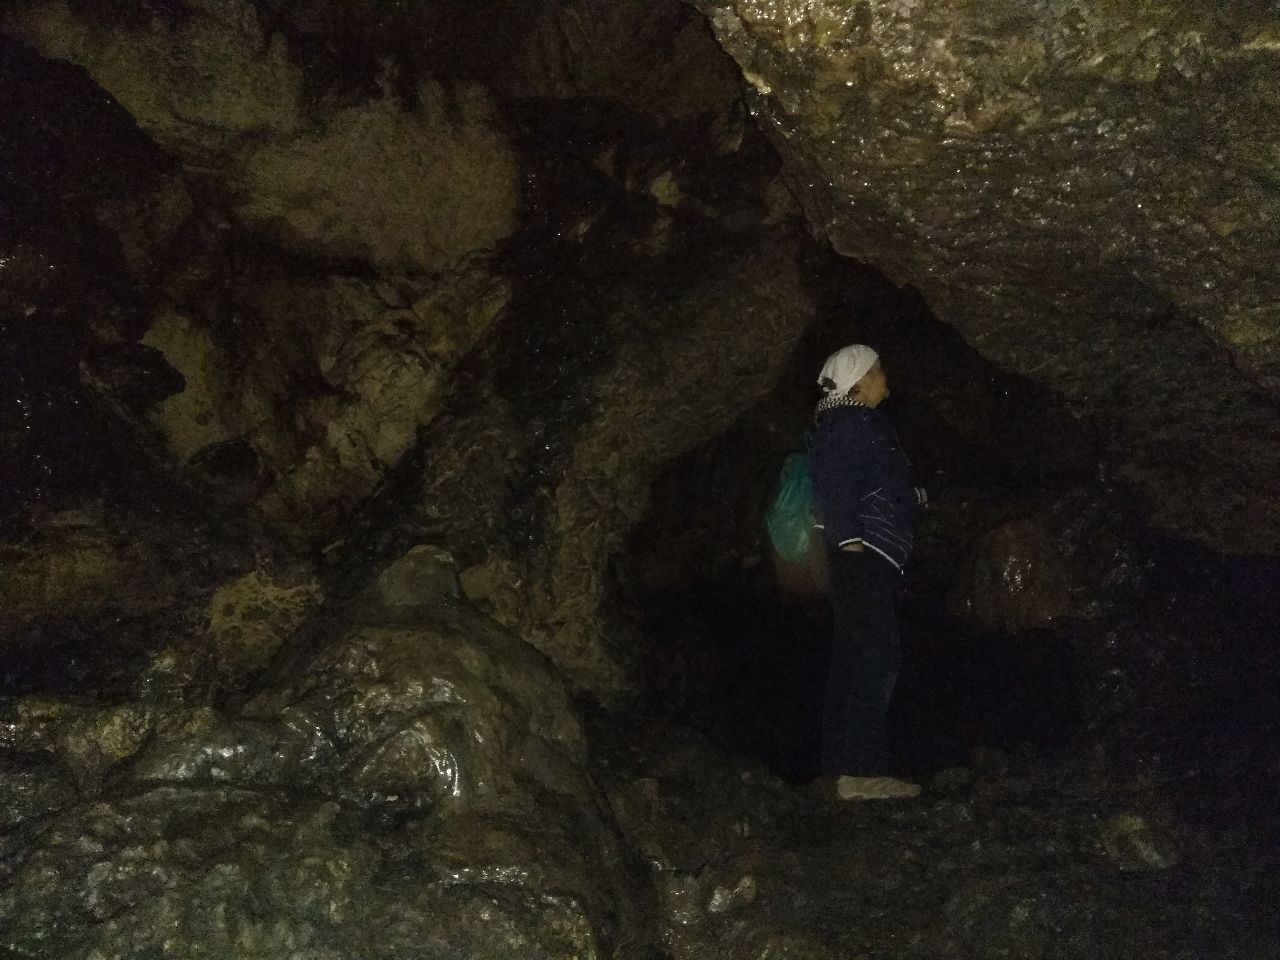 Отличительная черта Хазинской пещеры – она вся закопченная. В пещере можно наблюдать стенные натеки, натечный пол,  натечный водопад, натечные коры, сталактиты, сталагмиты, бахрому, занавесы, натечные сифоны, капелицы, гуры и ванны. - Башкирия. Вспомним лето...